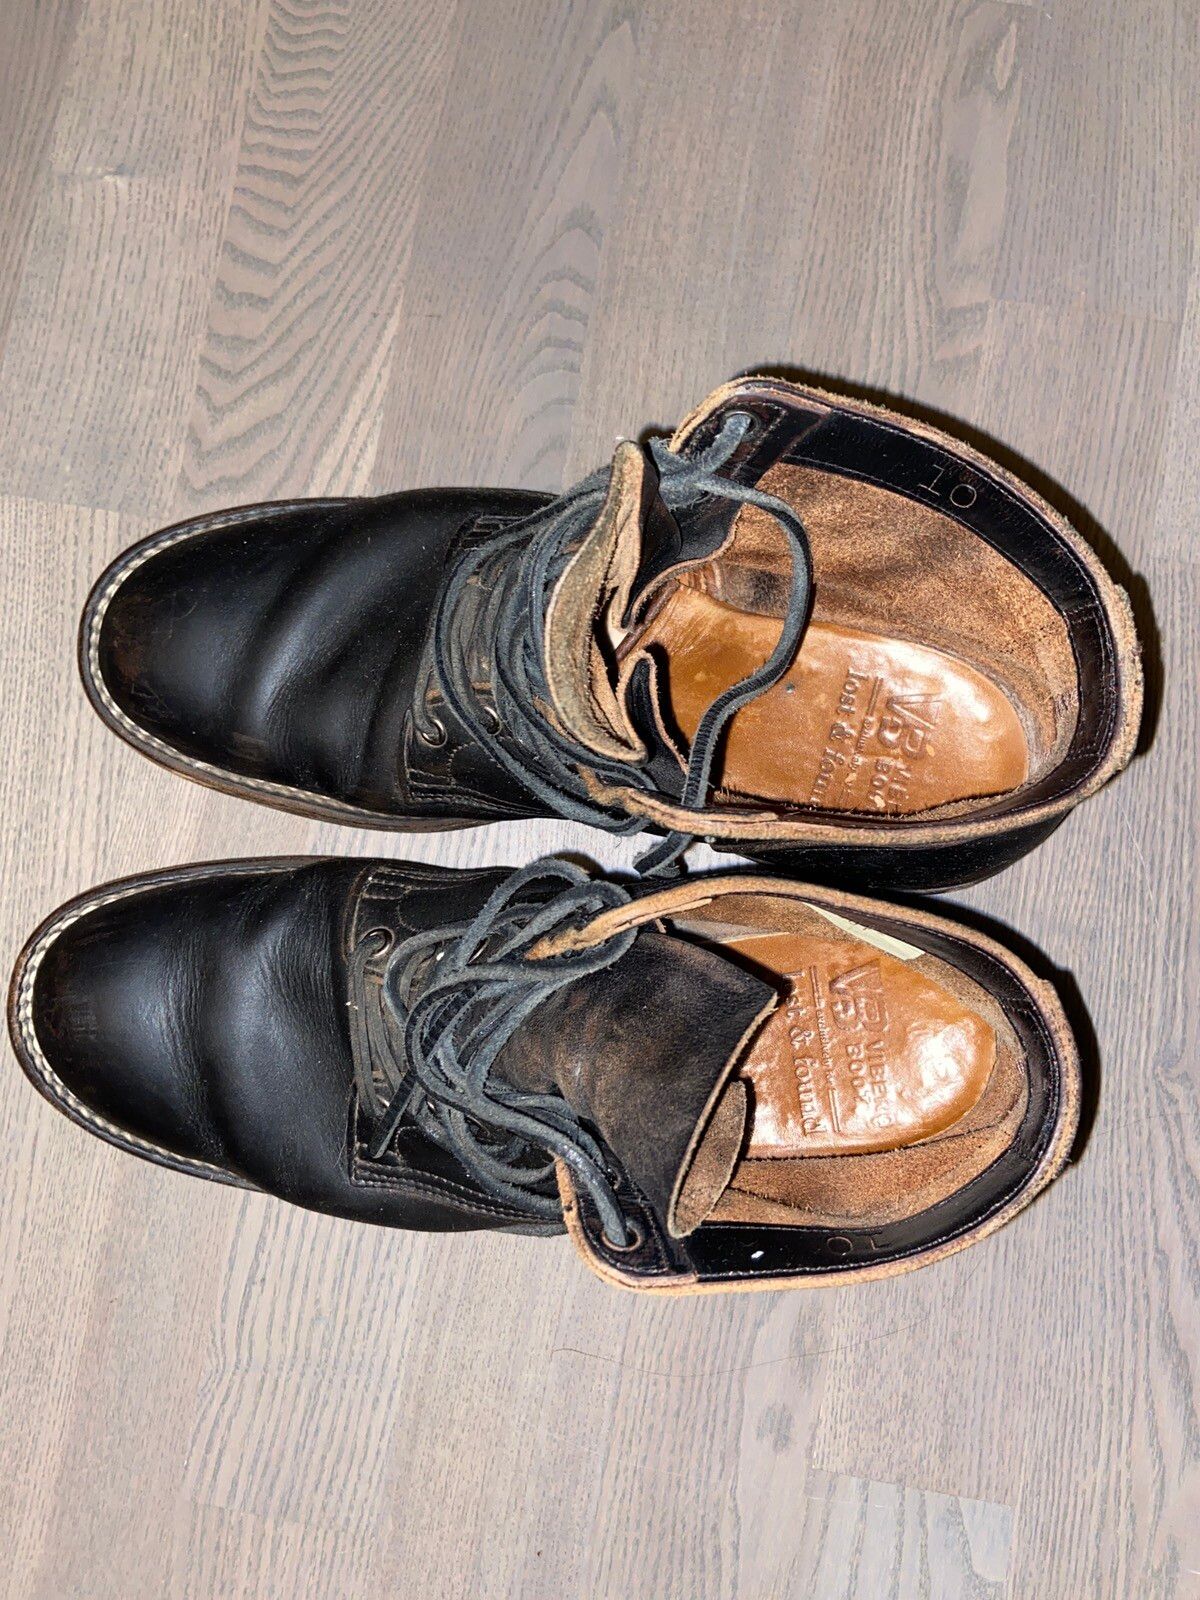 Viberg Viberg Black Leather Work Boots Size US 10 / EU 43 - 3 Thumbnail